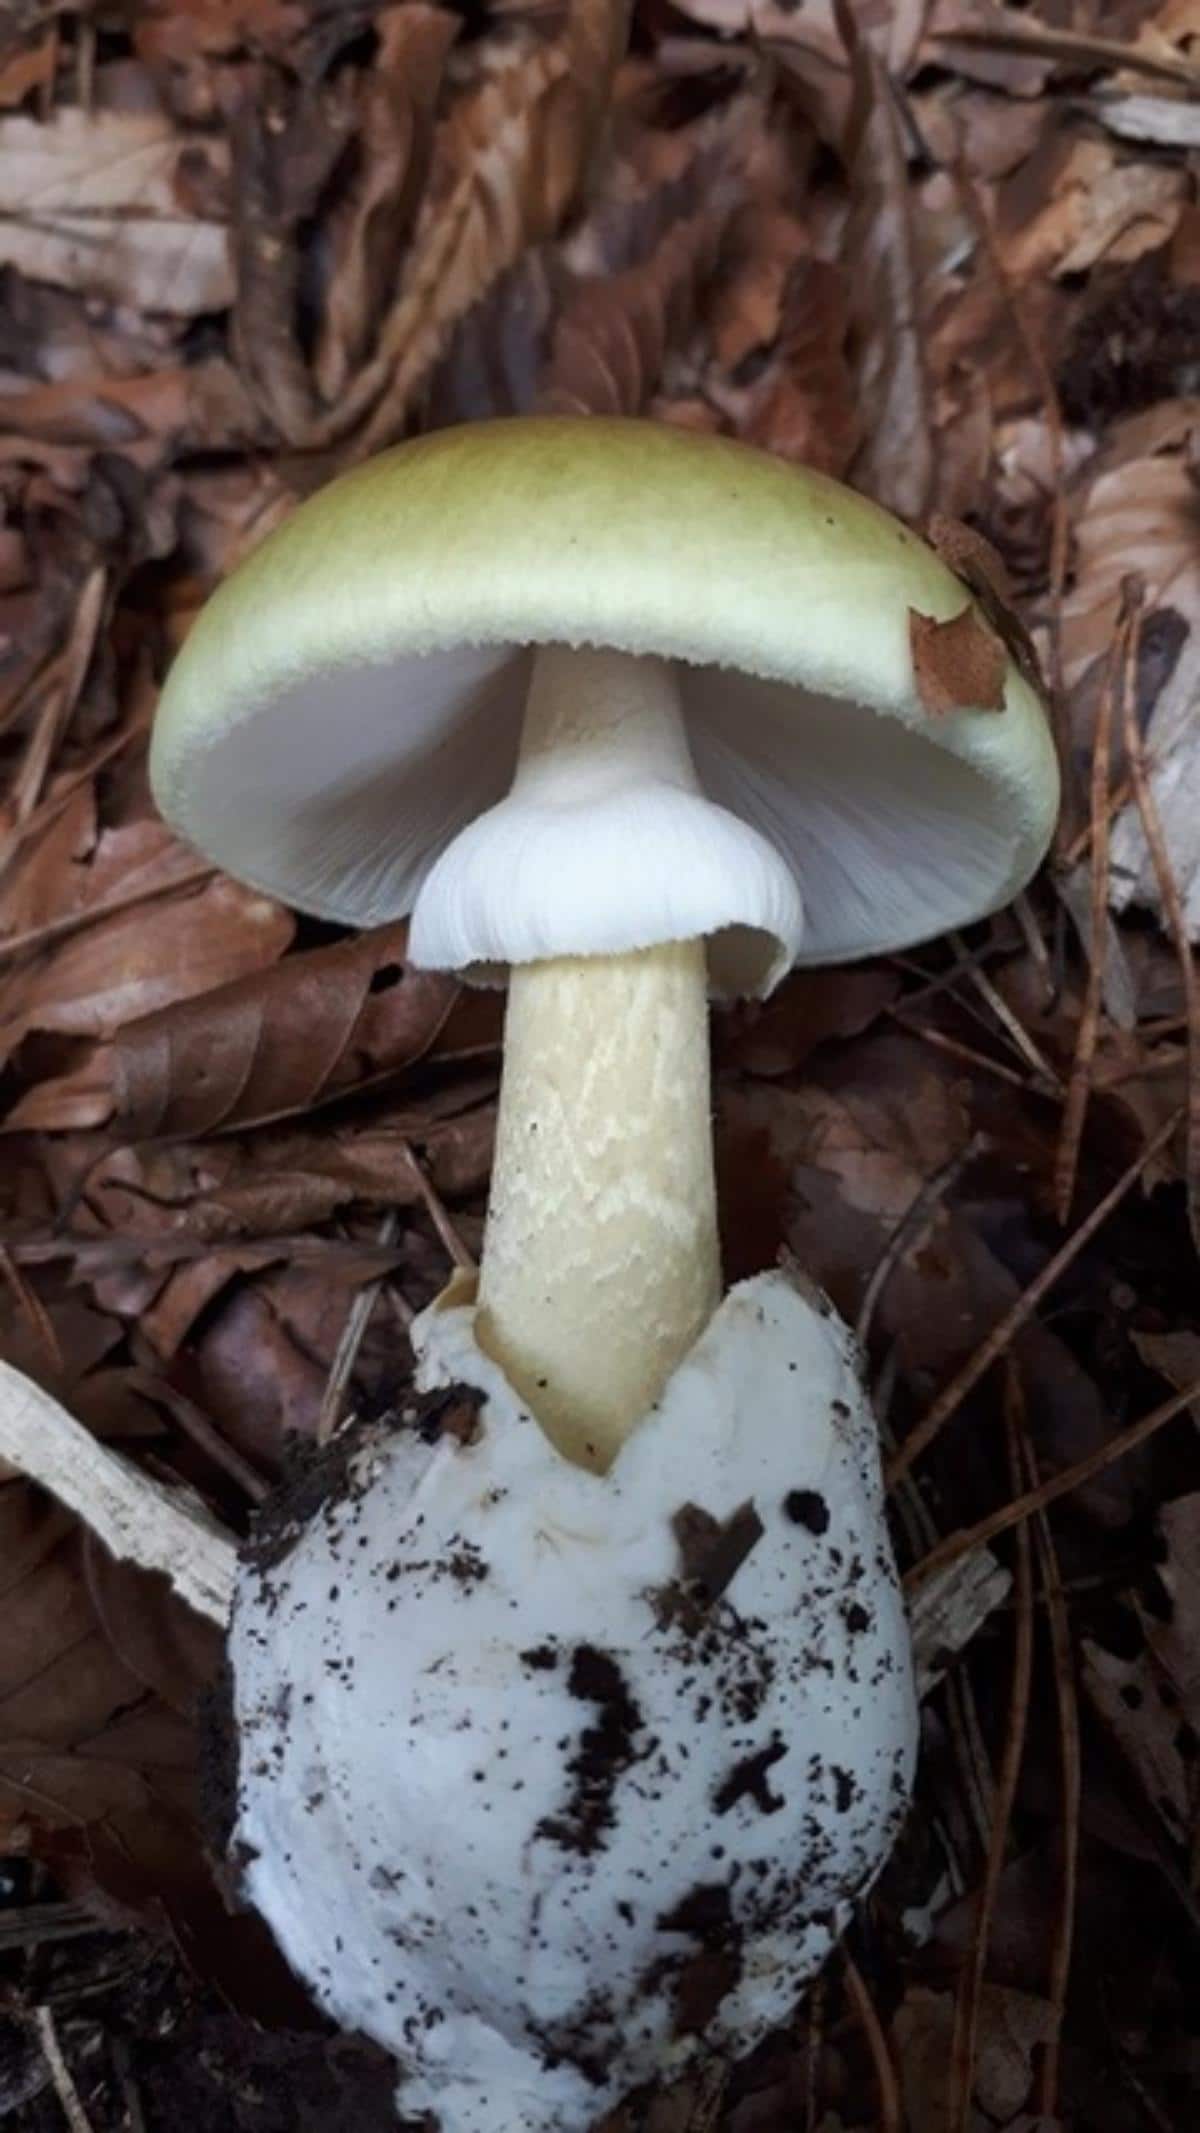 Death cap mushroom